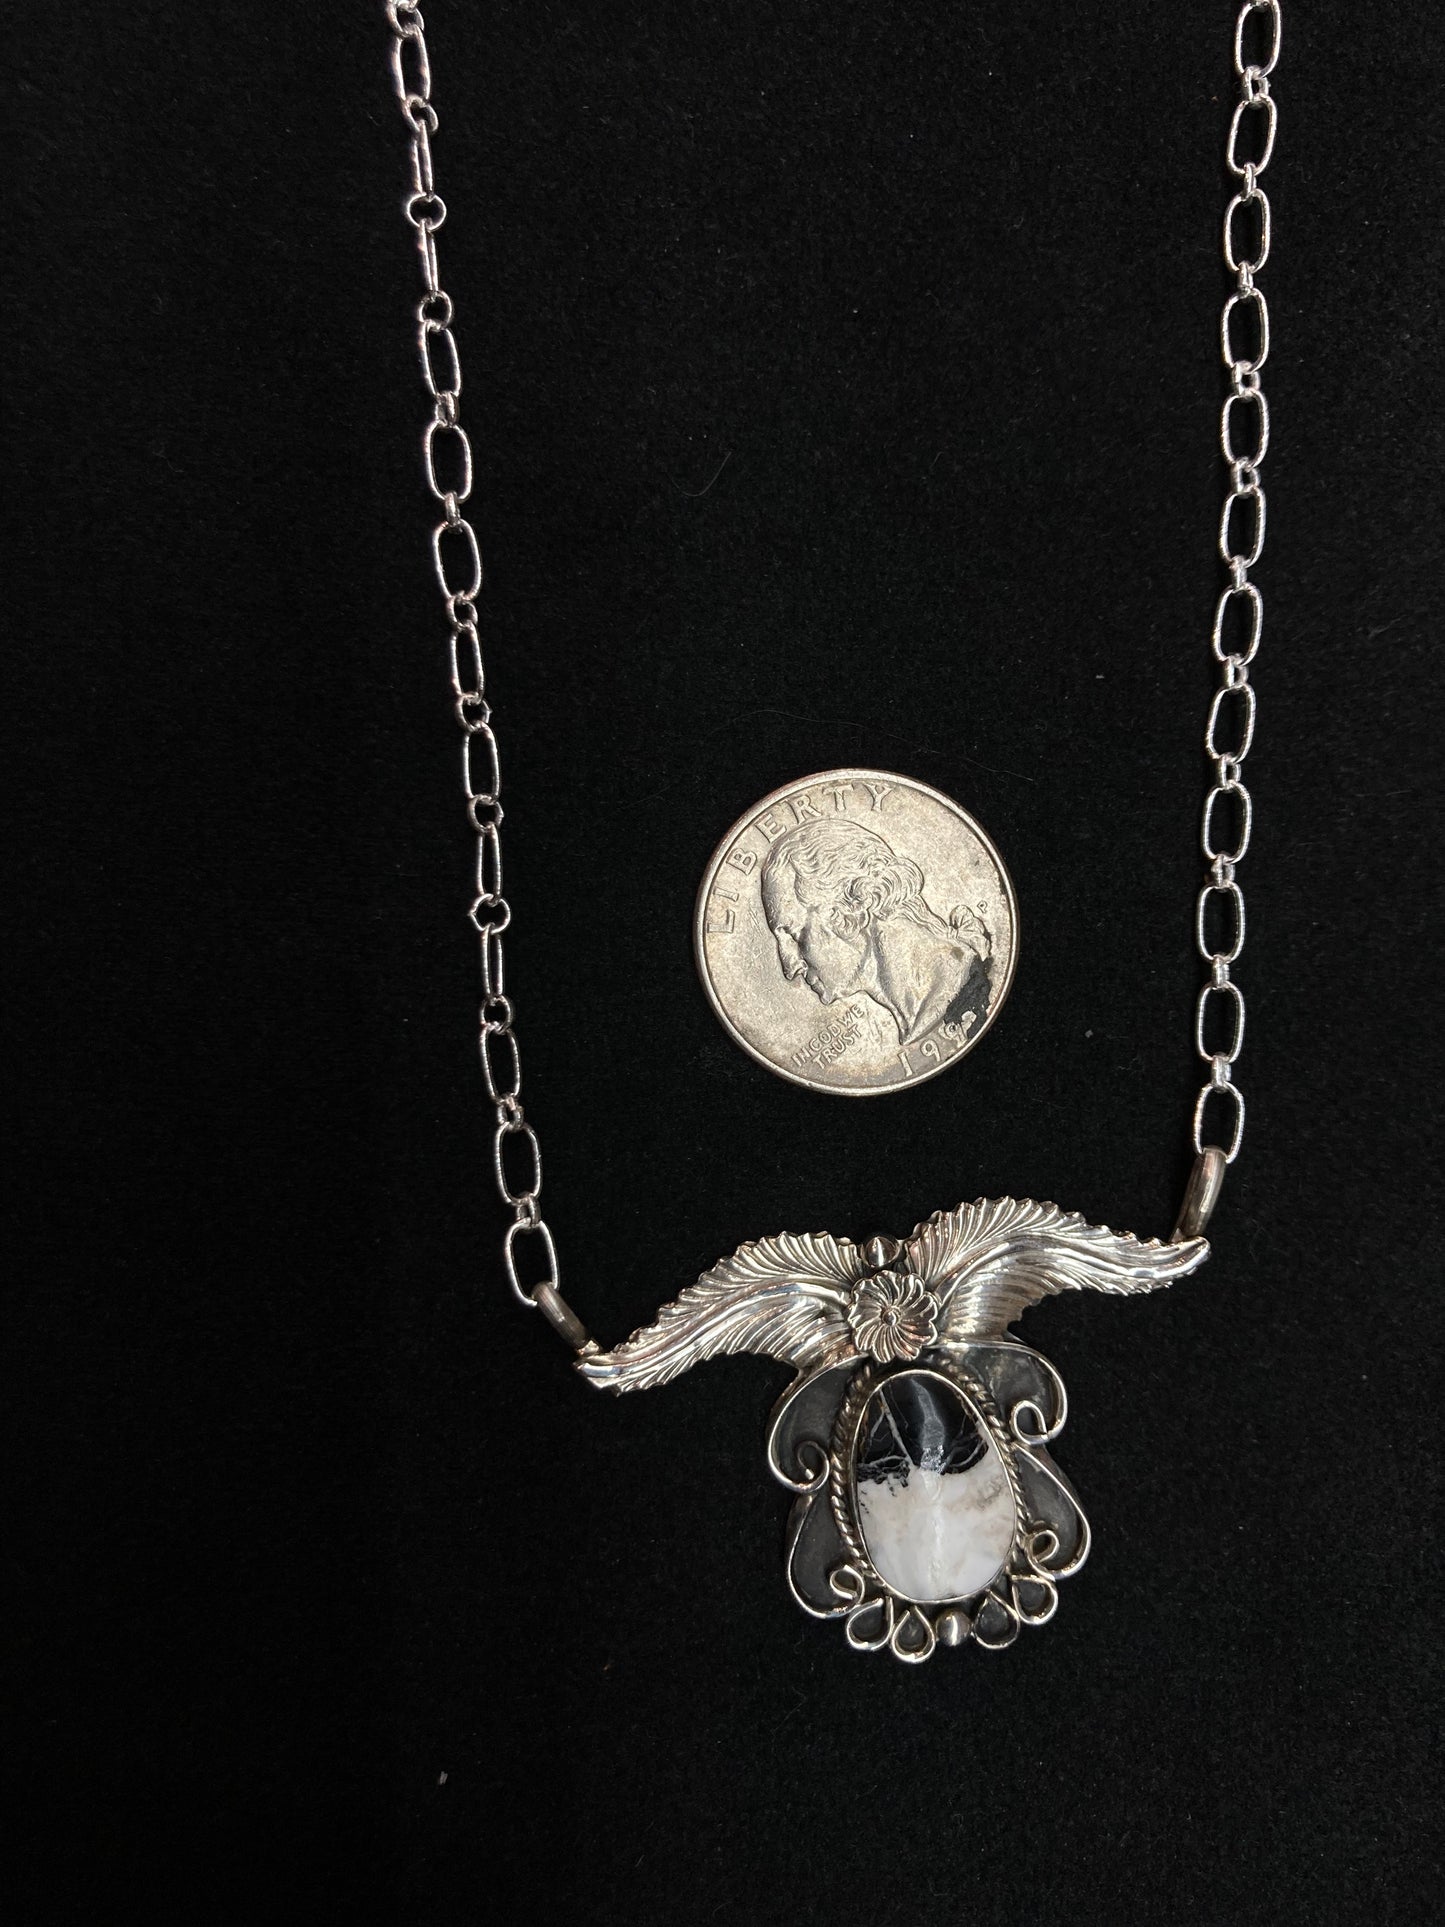 16” White Buffalo Necklace by Sadie Jim, Navajo